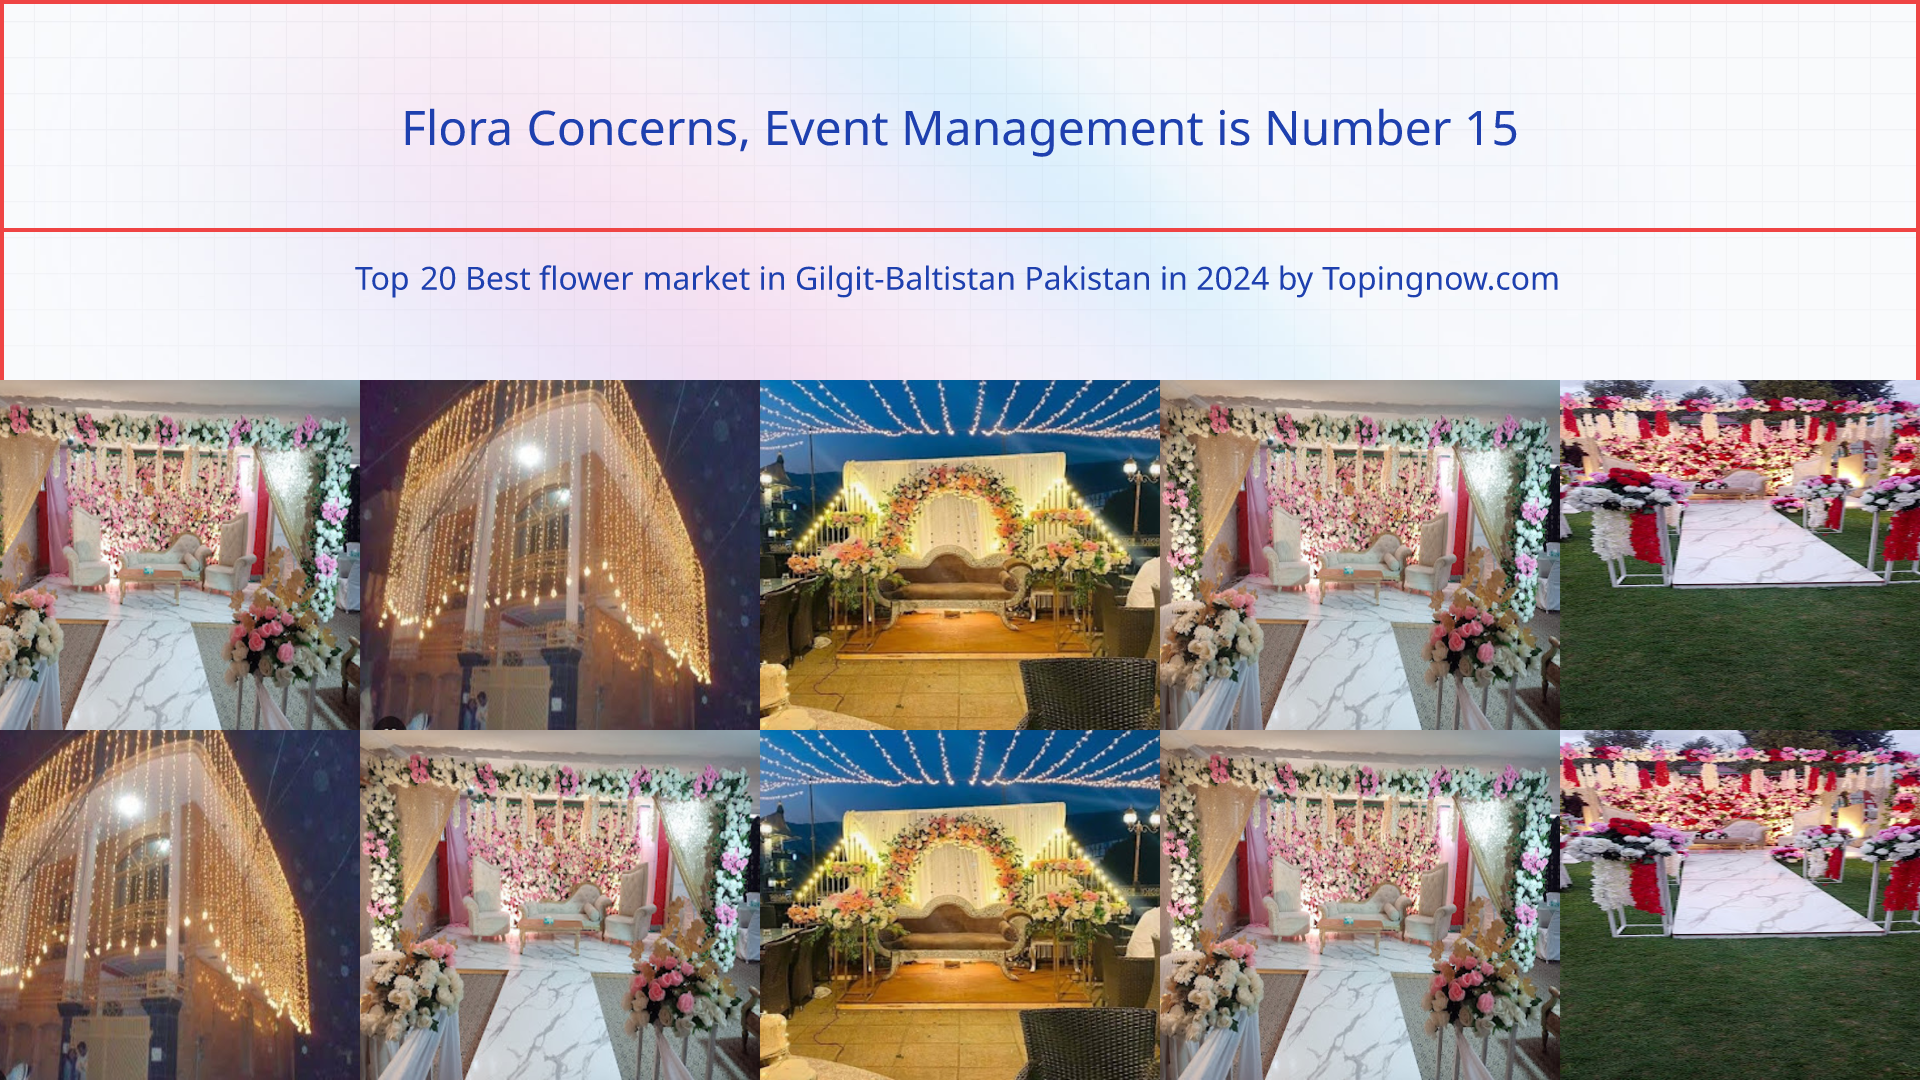 Flora Concerns, Event Management: Top 20 Best flower market in Gilgit-Baltistan Pakistan in 2024